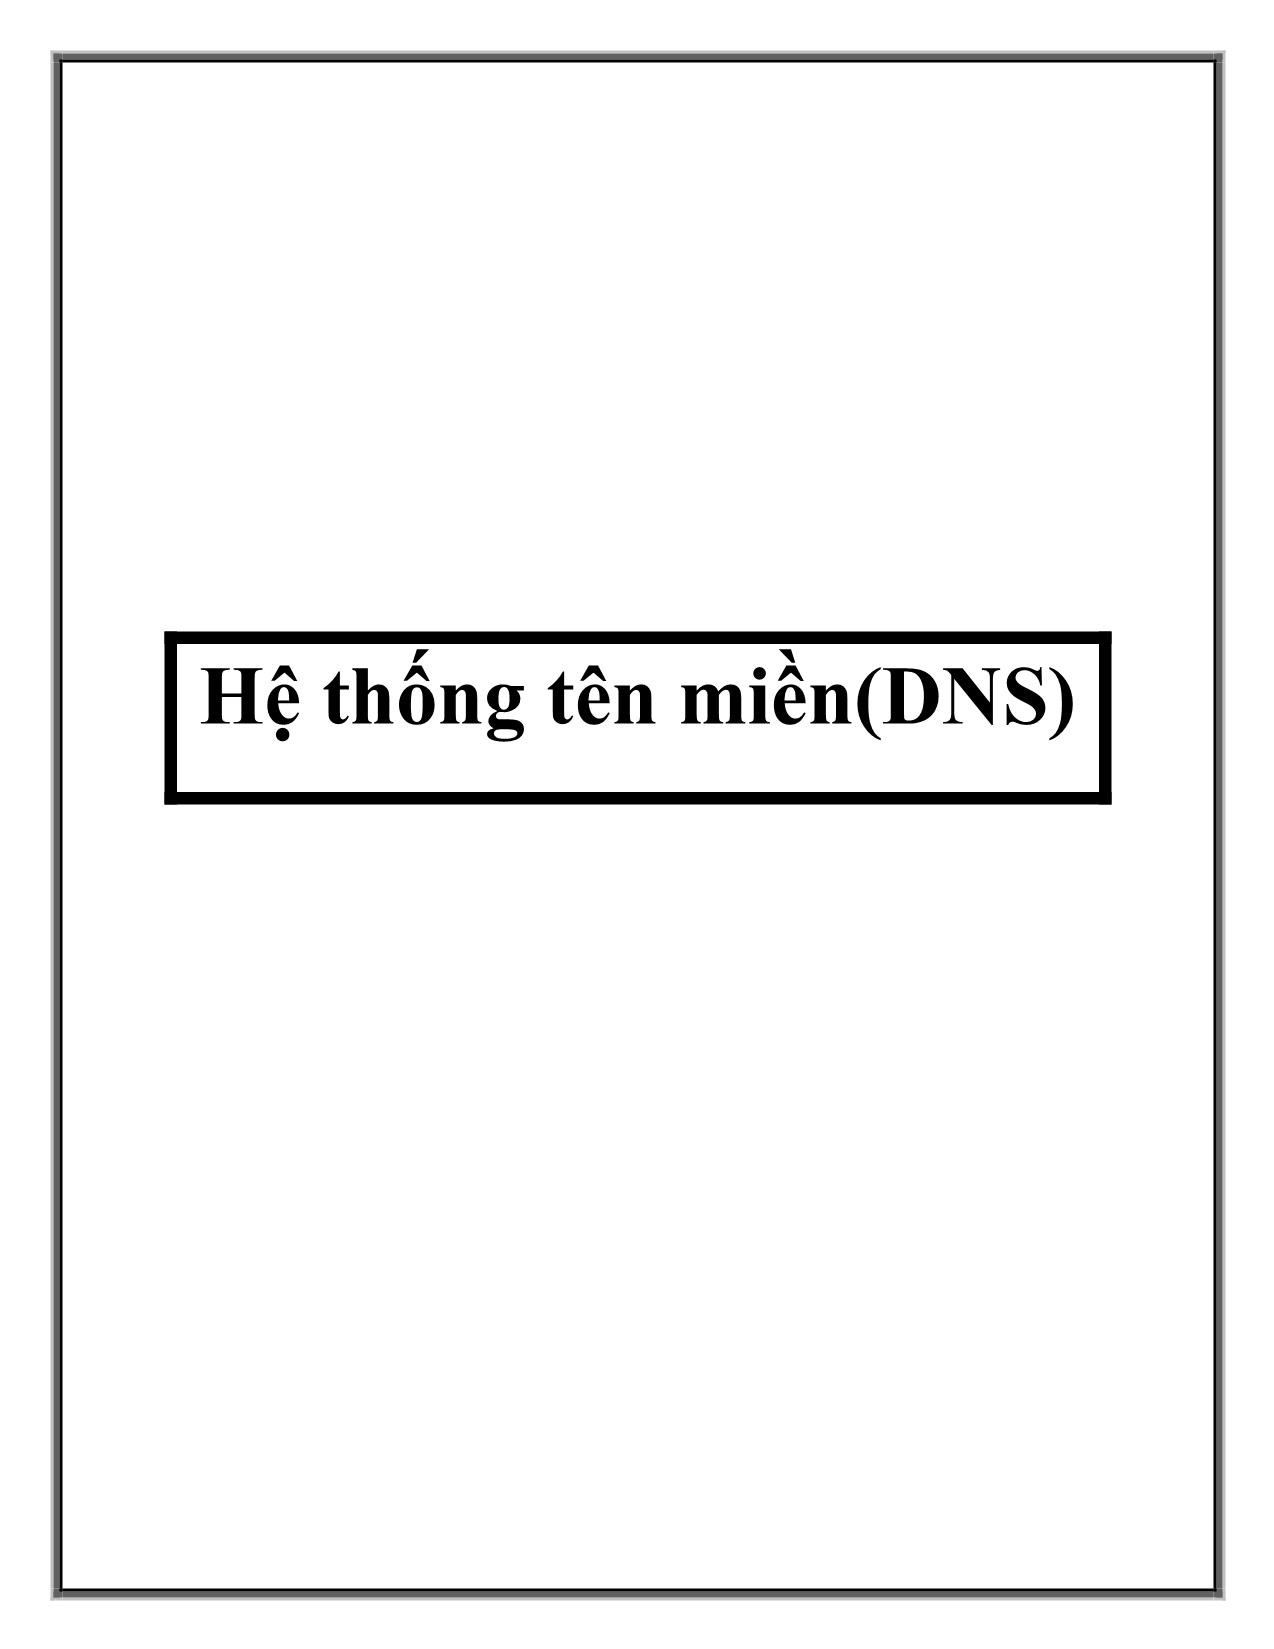 Hệ thống tên miền (DNS) trang 1